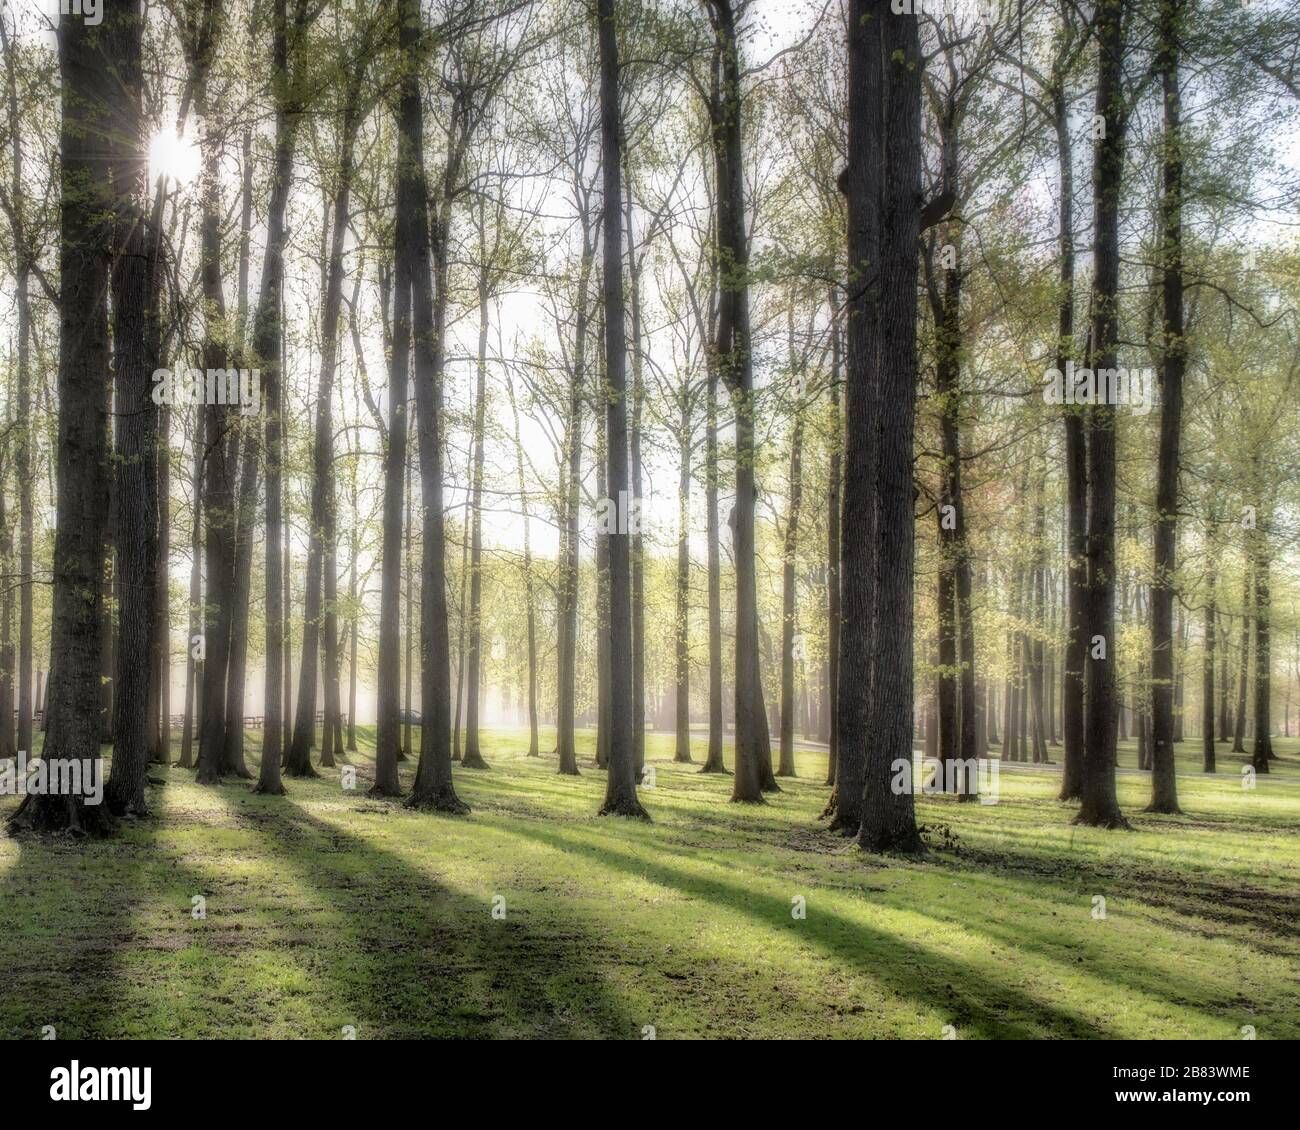 Wald von Eichen in Nebel und frühmorgendlichen Licht und Schatten, die durch die Bäume strömen, mit einem Sonnenaufgang in der linken oberen Ecke. Stockfoto